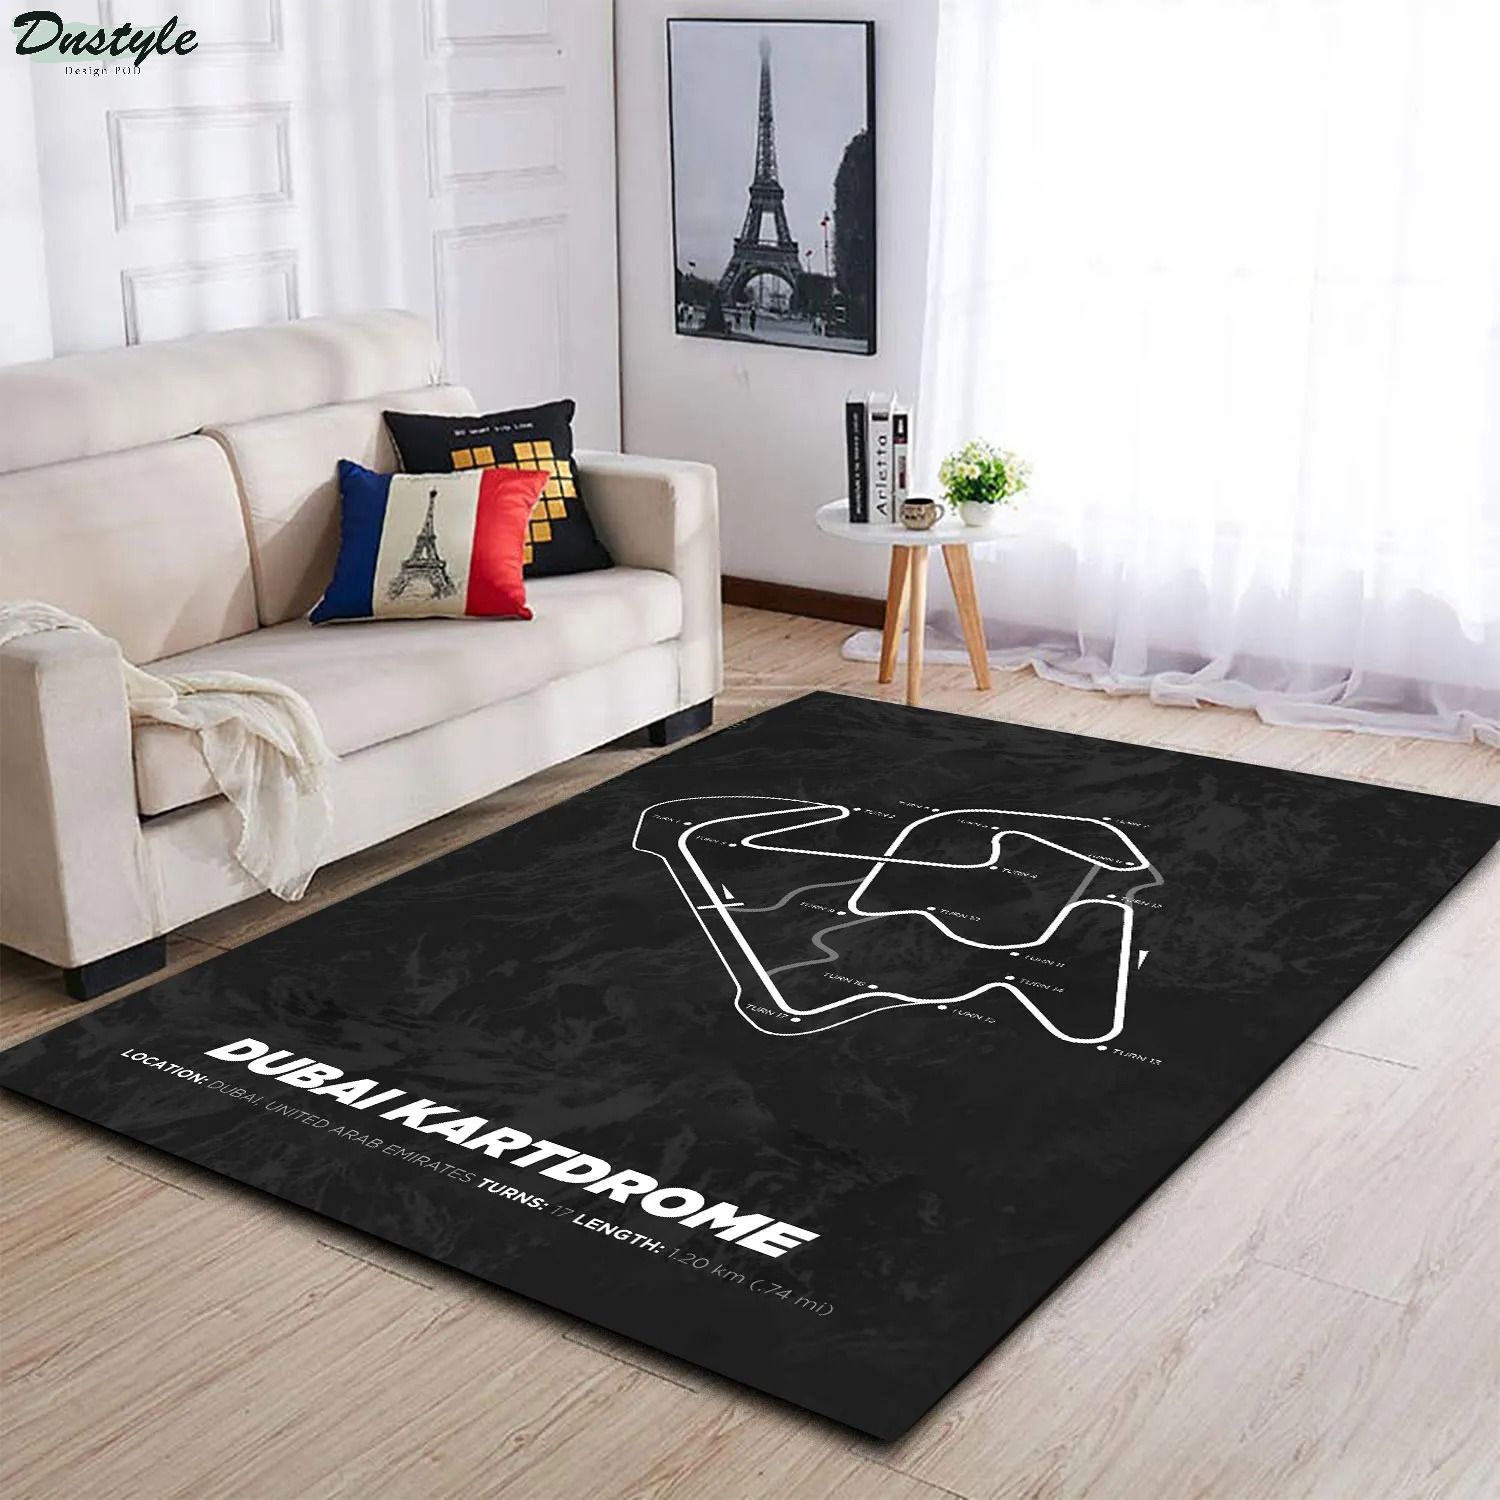 Dubai kartdrome f1 track rug 1